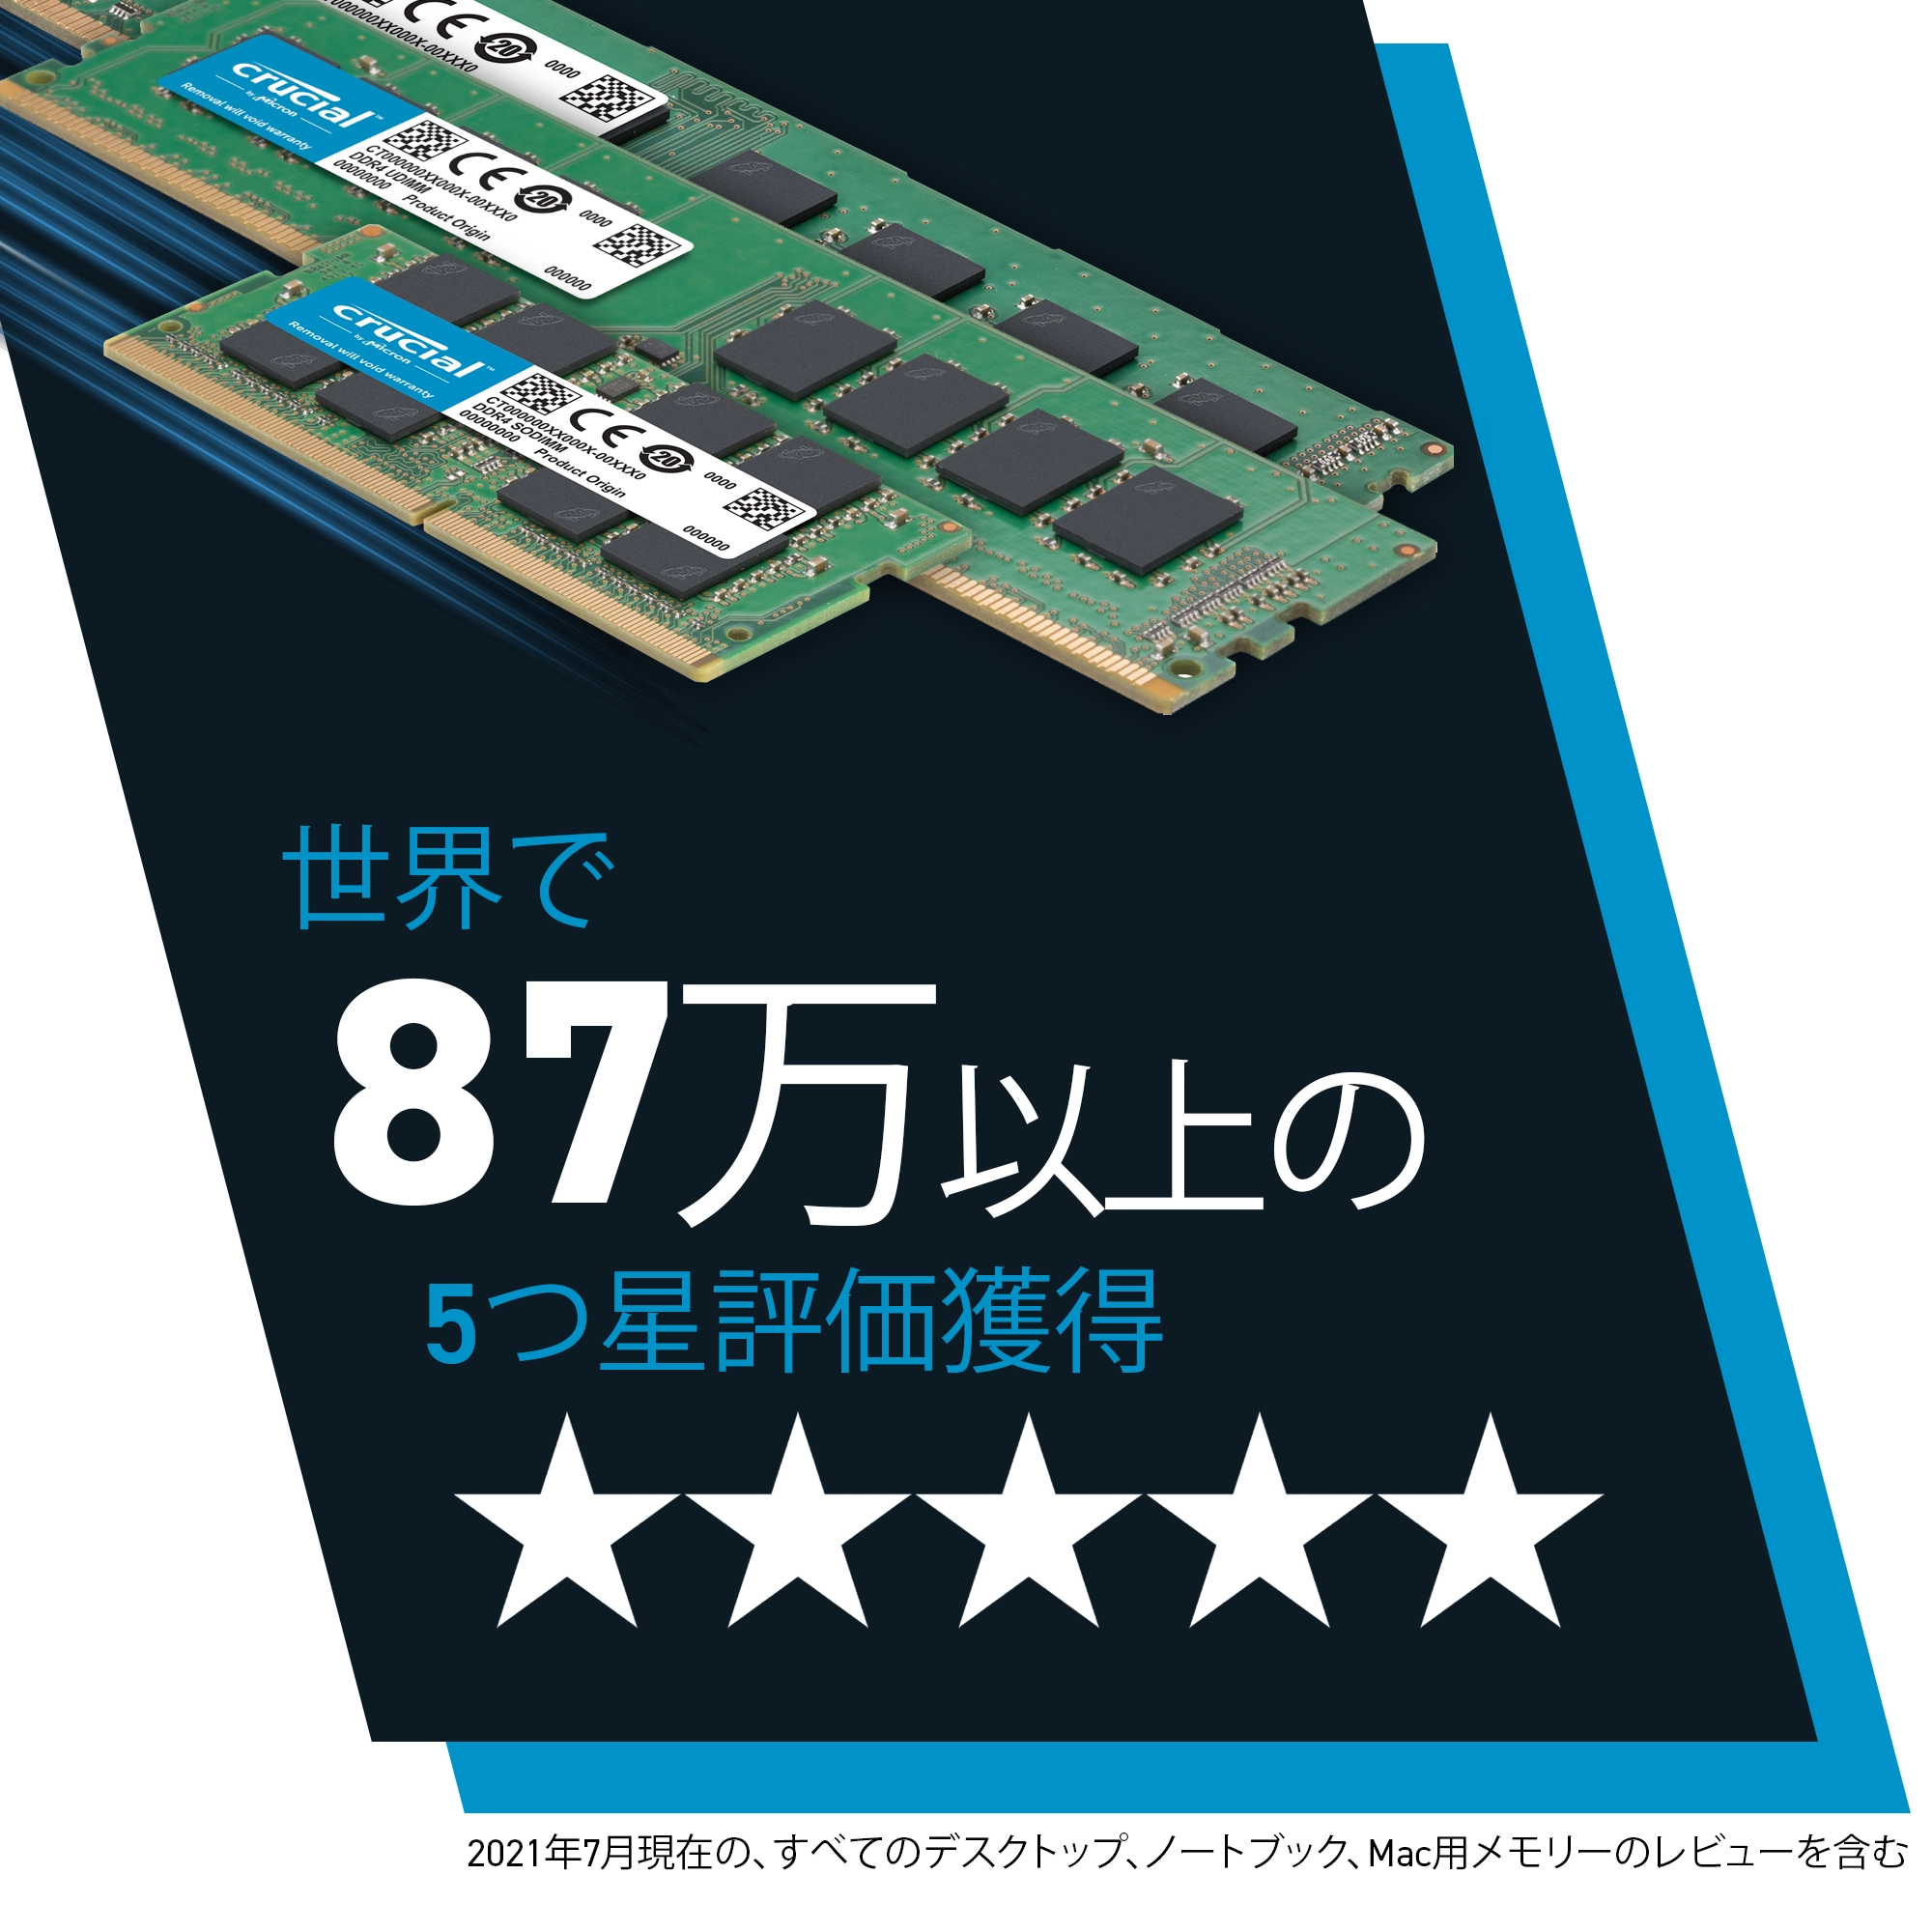 Crucial CT2K8G4DFRA32A (DDR4 PC4-25600 8GB 2枚組)の特長